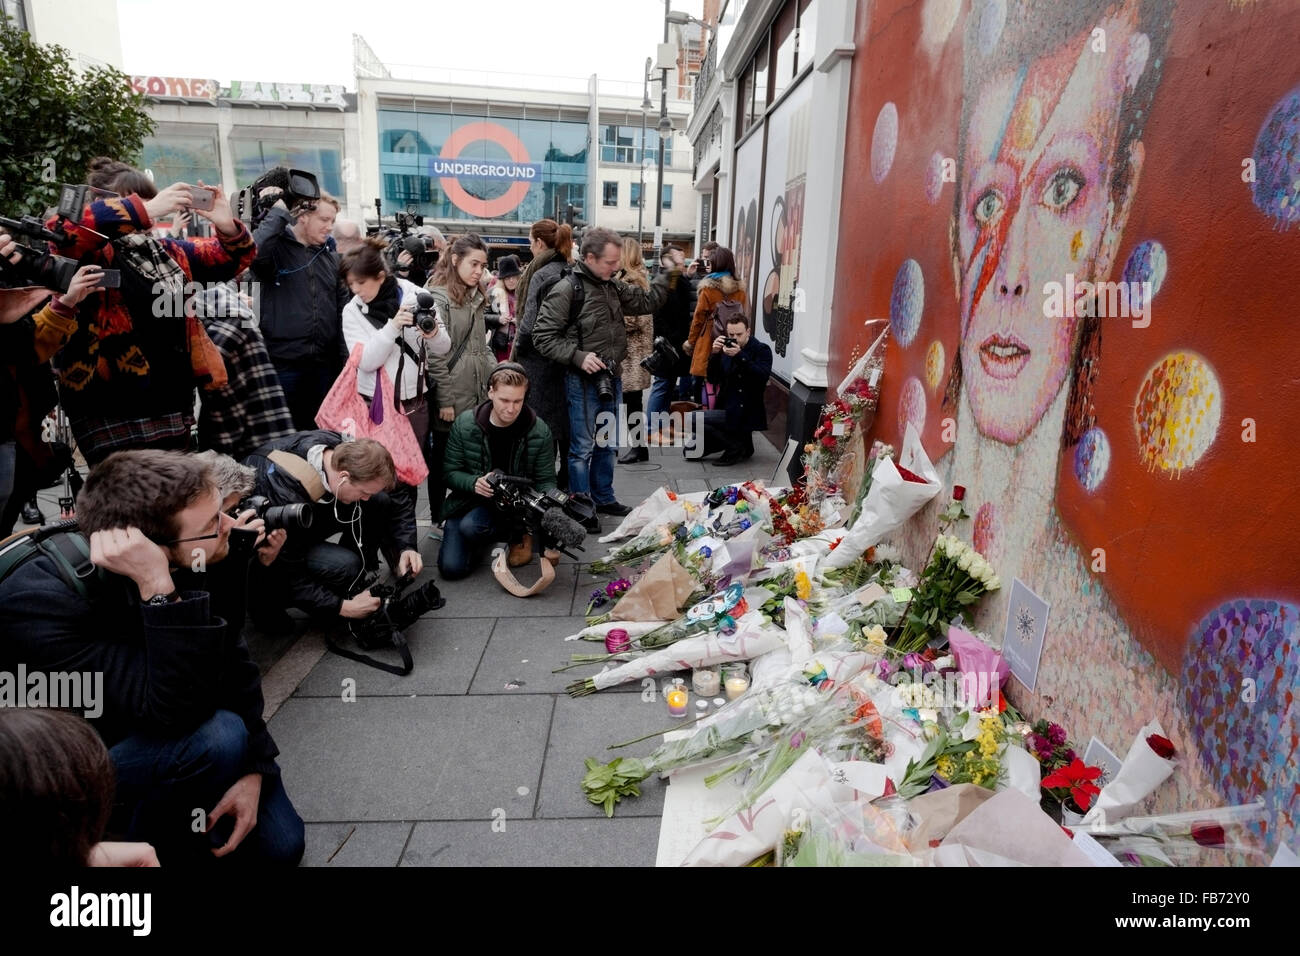 Londres, Reino Unido. 11 ene, 2016. El Medio scrum en el mural a Brixton nacido de David Bowie, que se ha convertido en un foco para los homenajes a Bowie tras su fallecimiento Crédito: Miel Salvadori/Alamy Live News Foto de stock